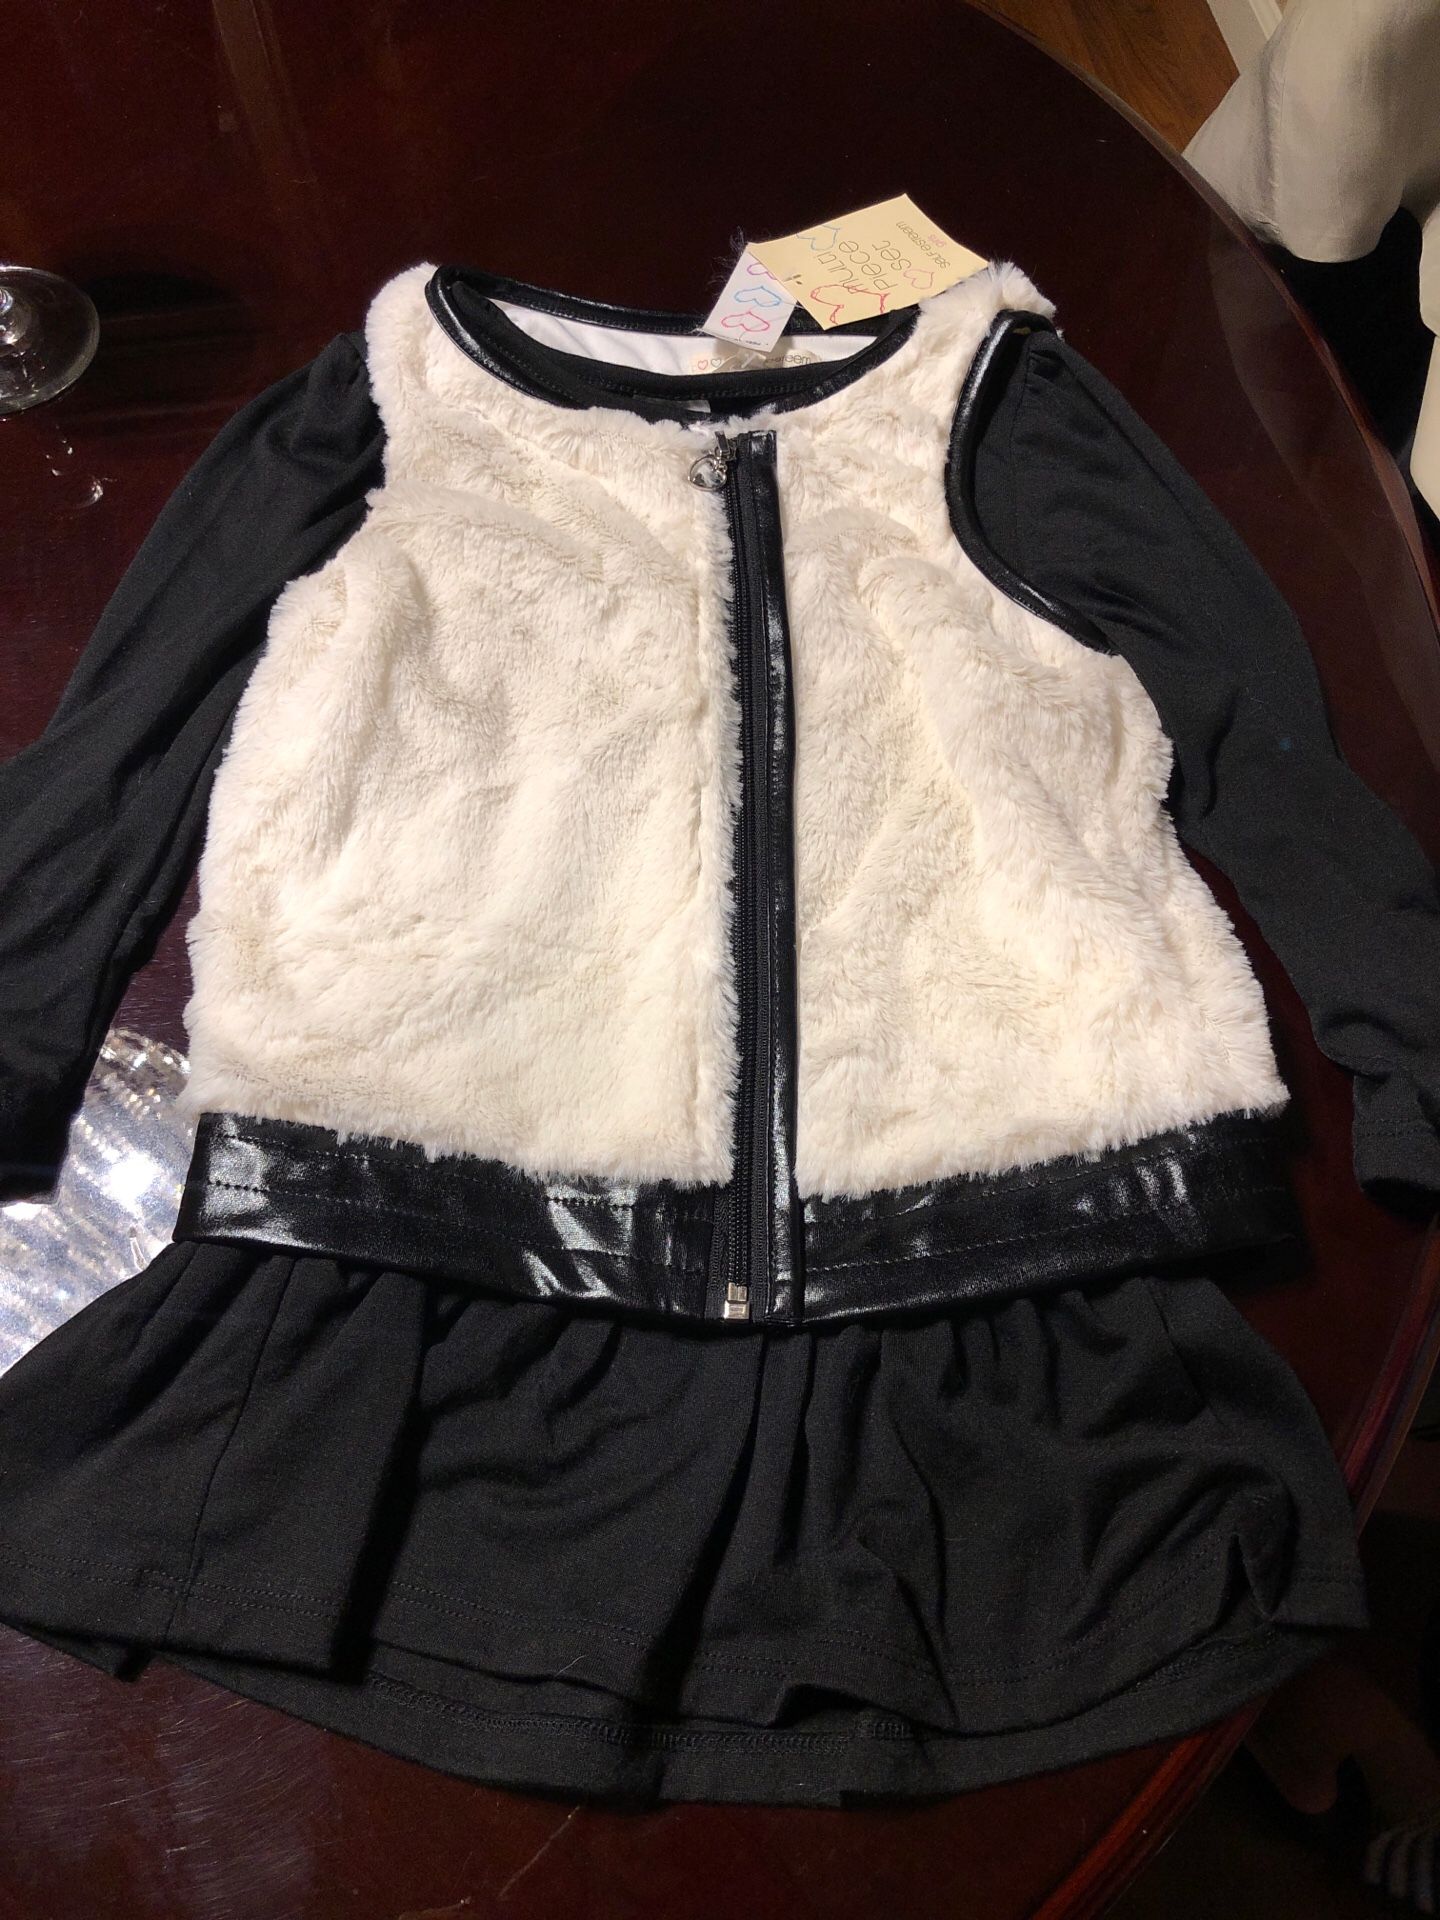 Size 6 faux fur vest with black cotton long sleeve dress